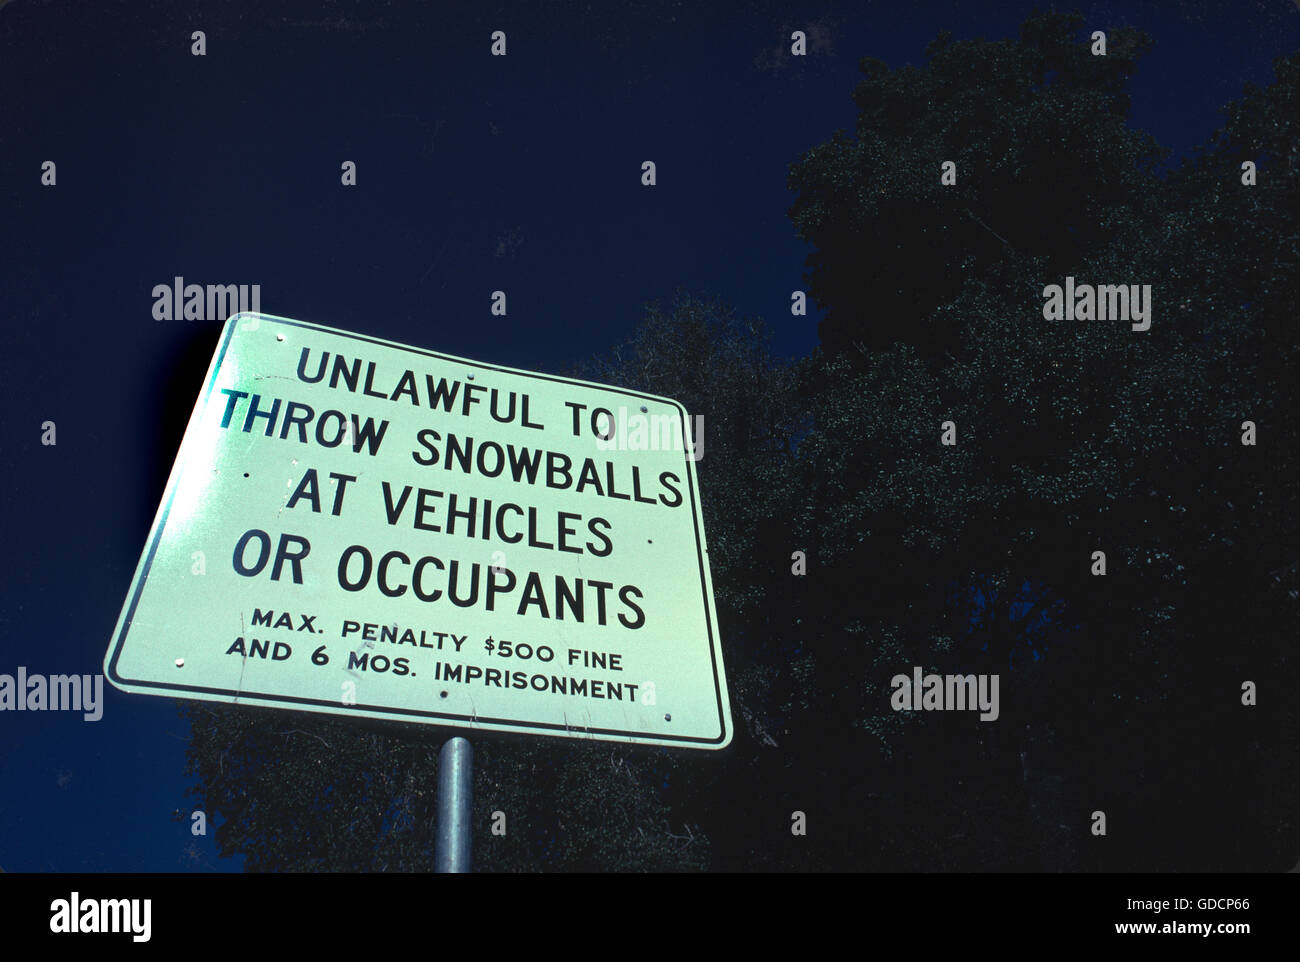 Ernst, aber humorvoll auch Zeichen in der Nähe von Palomar Mountain in San Diego County, Kalifornien USA - rechtswidrig, werfen Schneebälle auf Fahrzeugen oder Insassen Stockfoto